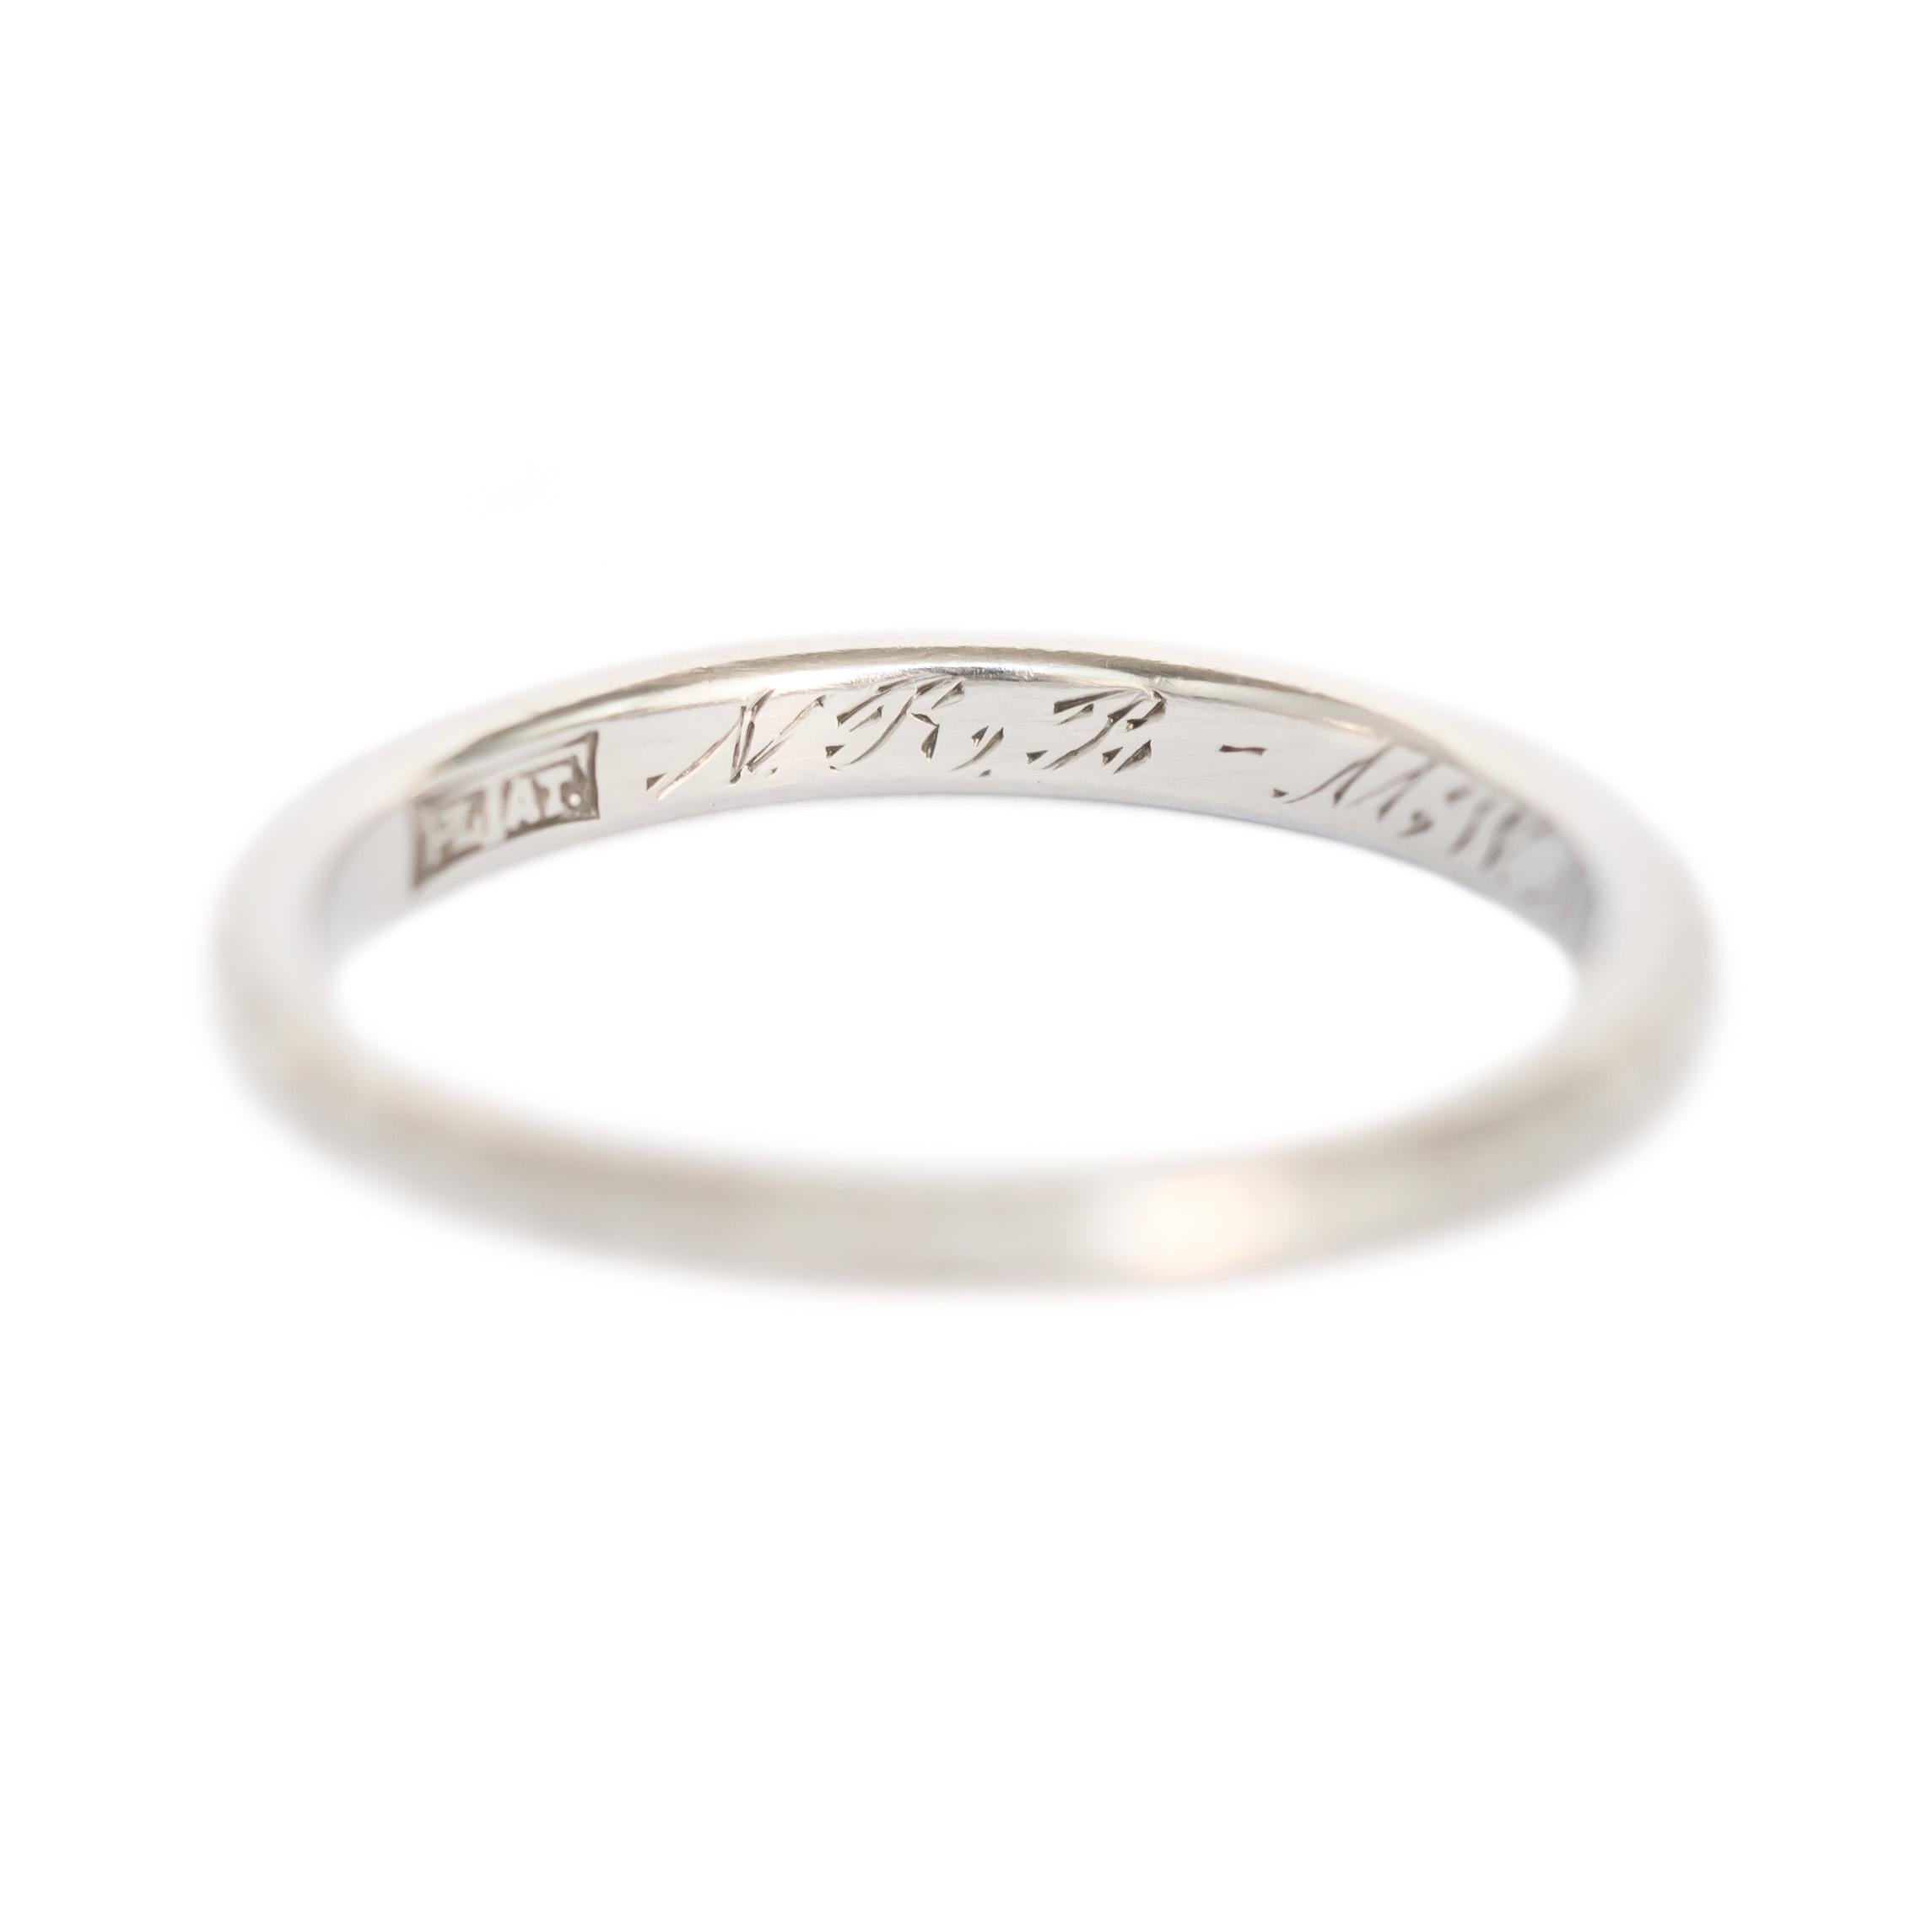 Item Details: 
Ring Size: 7
Metal Type: Platinum
Weight: 4.2 grams

Engraving: 